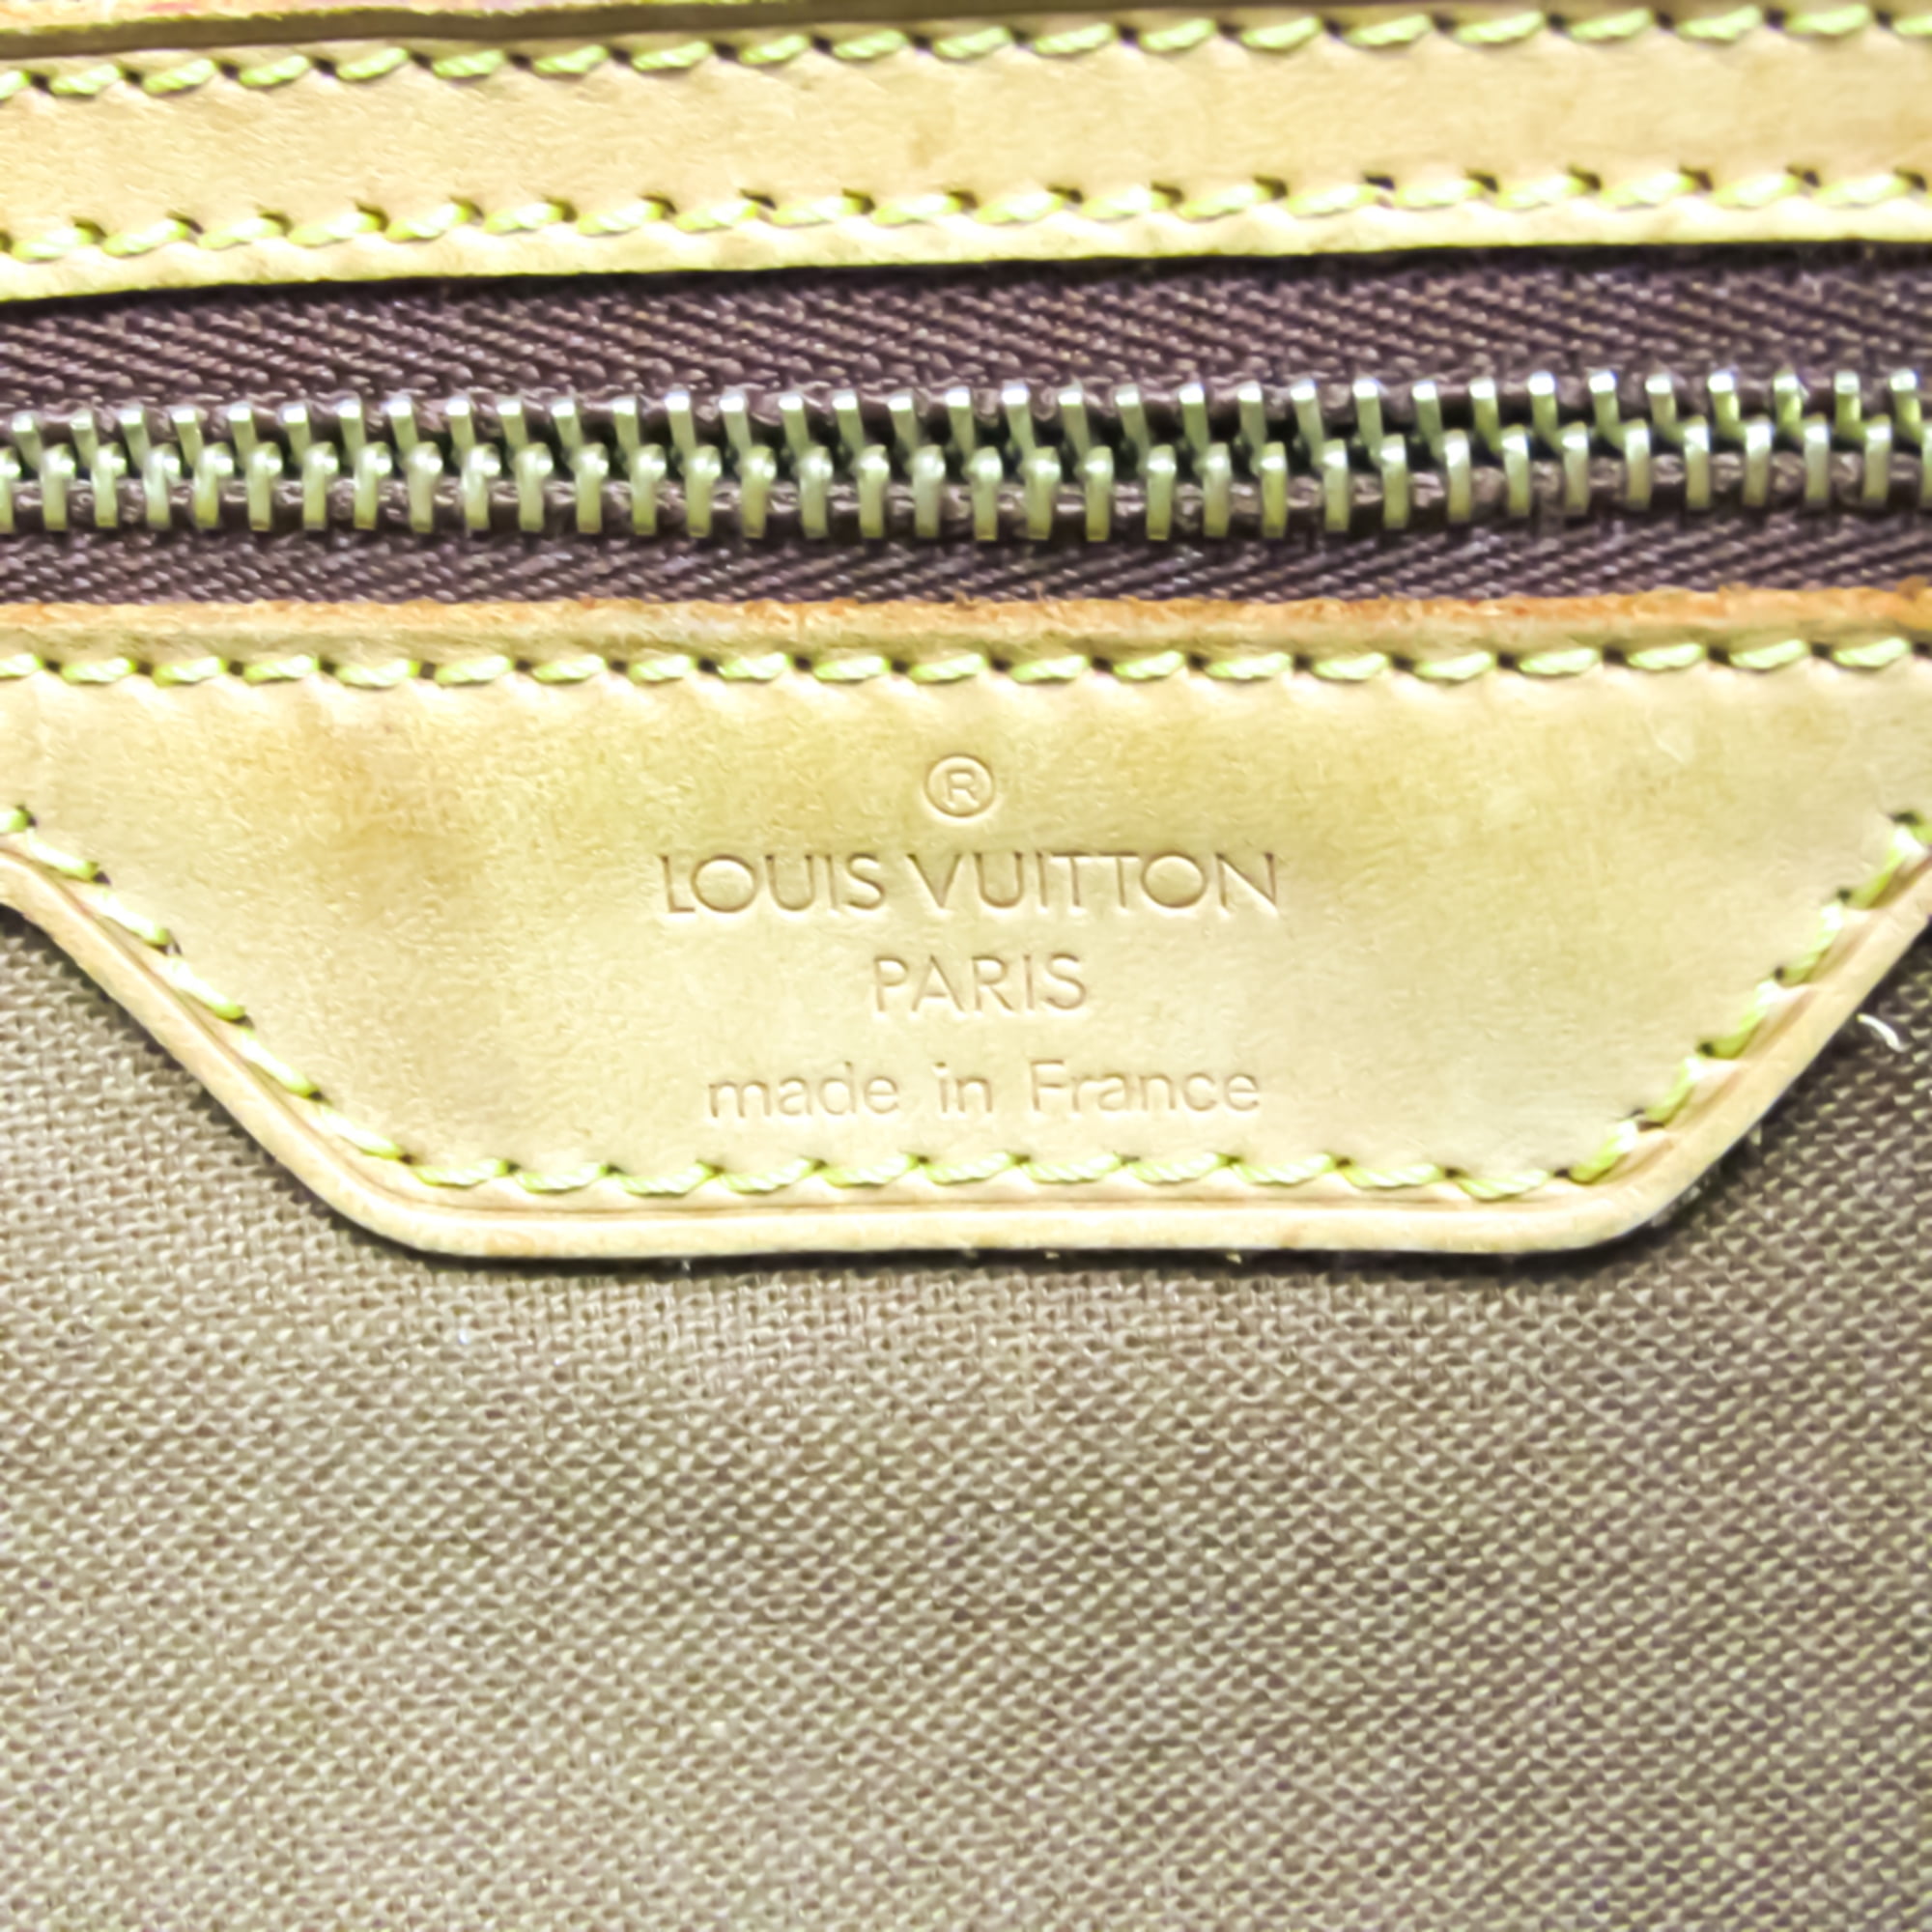 LOUIS VUITTON Tote Bag Handbag Cabas Mezzo Monogram canvas M51151 Brow –  Japan second hand luxury bags online supplier Arigatou Share Japan